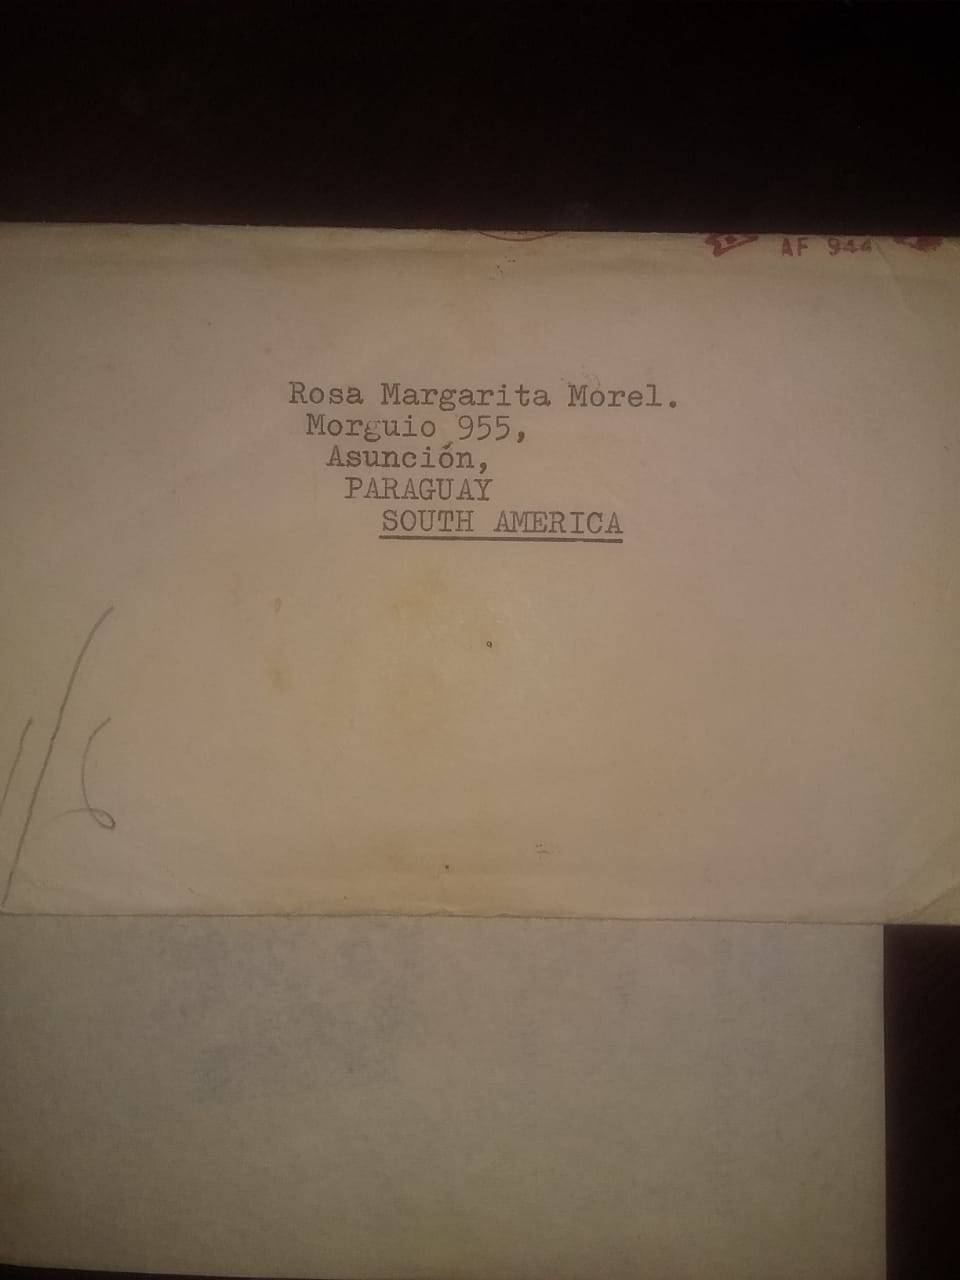 Todavía conserva intacto el sobre en el que llegó la famosa carta con la foto autografiada de The Beatles hace décadas.